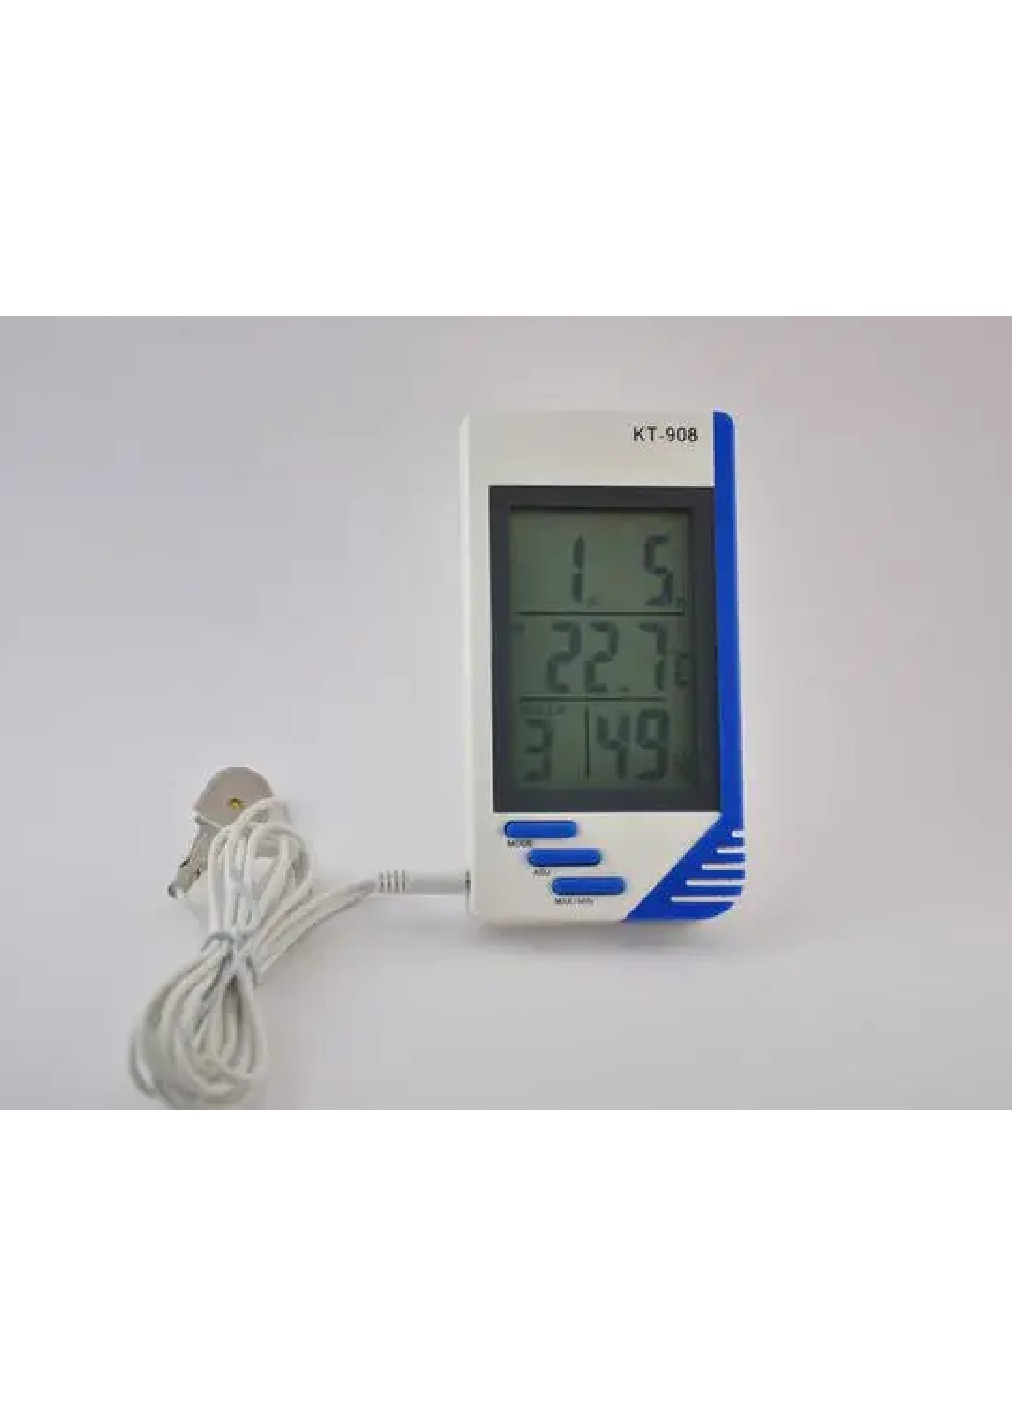 Переносной портативный компактный термометр с гигрометром метеостанцией выносным датчиком (474855-Prob) Unbranded (260023483)